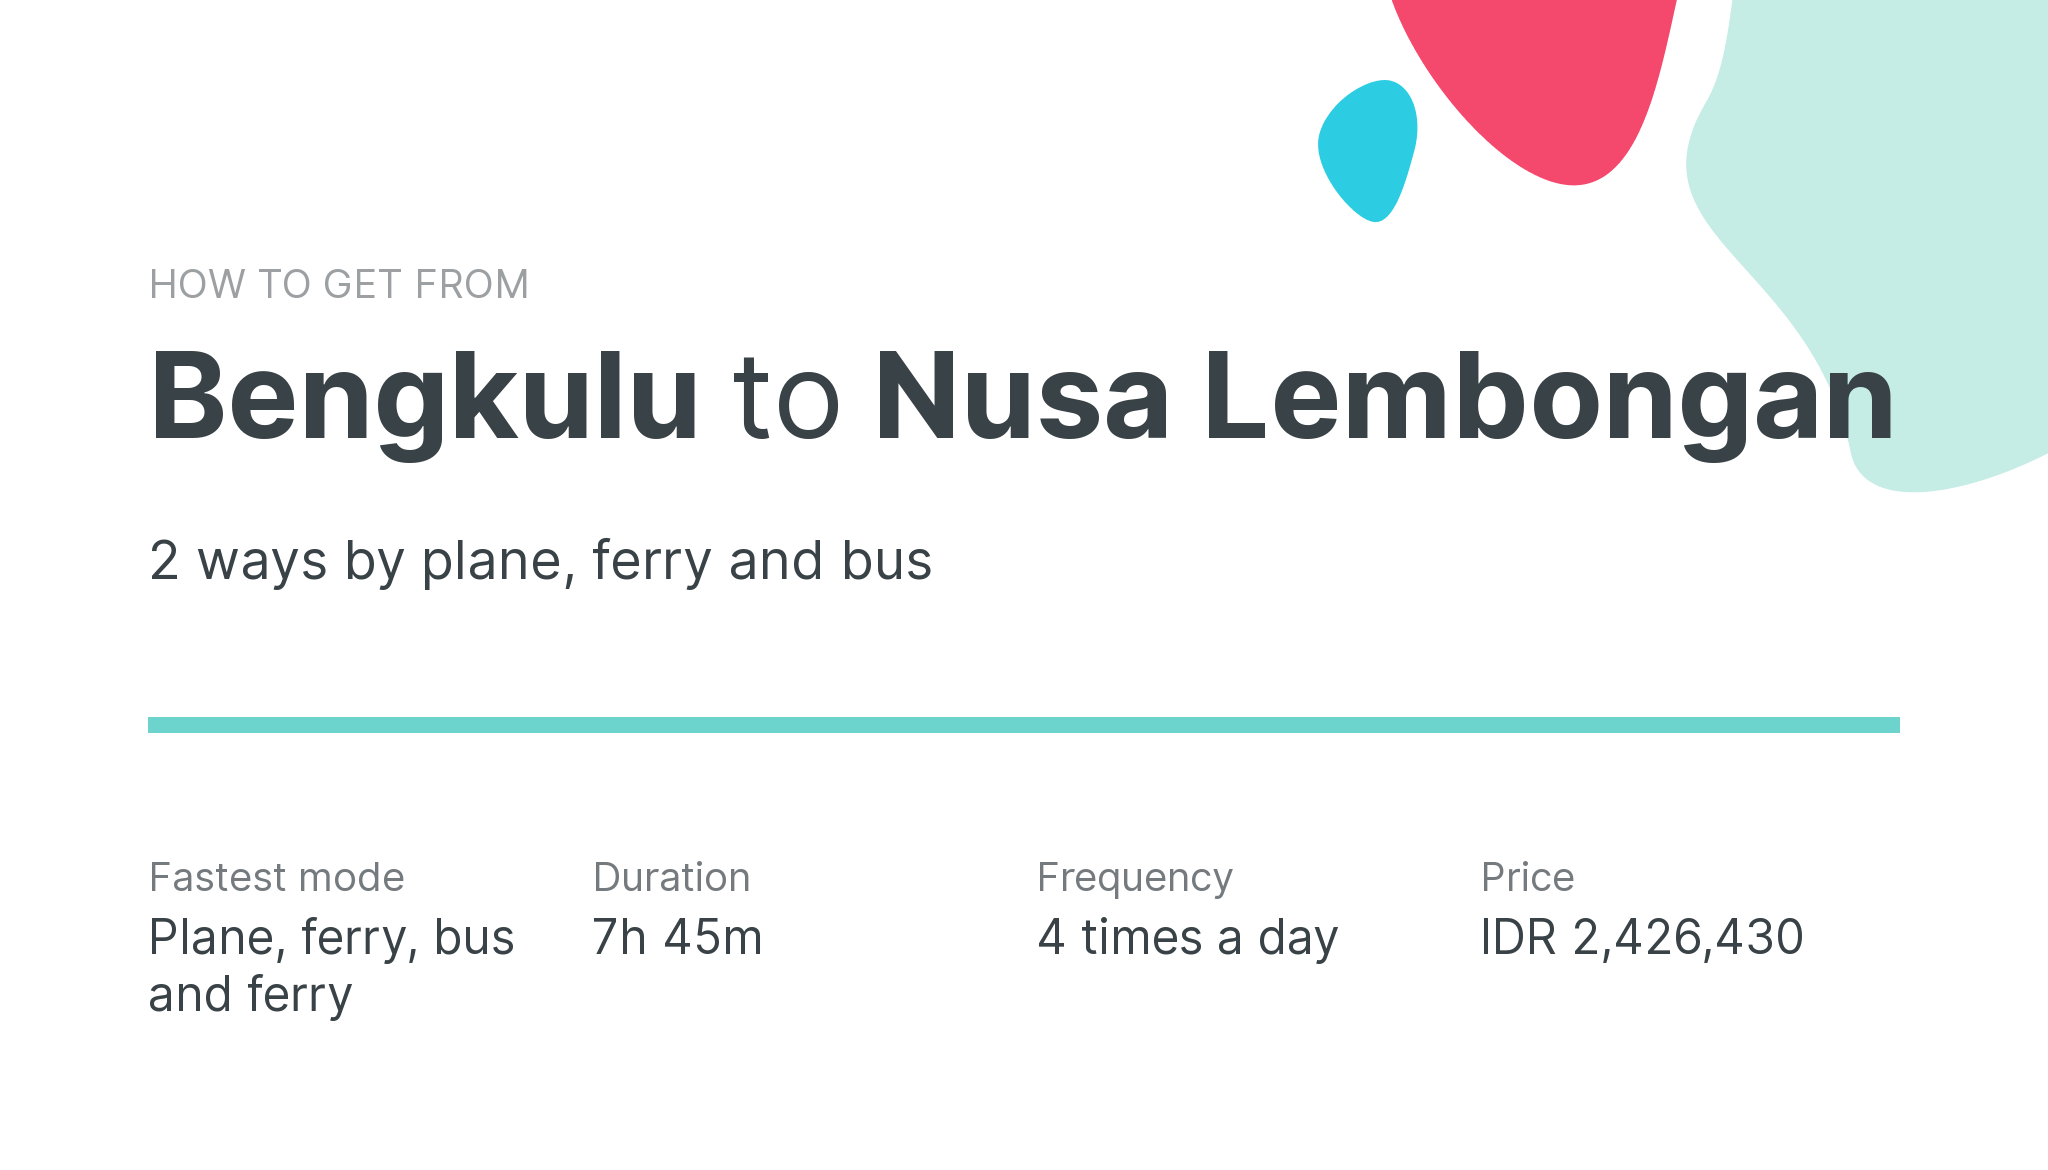 How do I get from Bengkulu to Nusa Lembongan